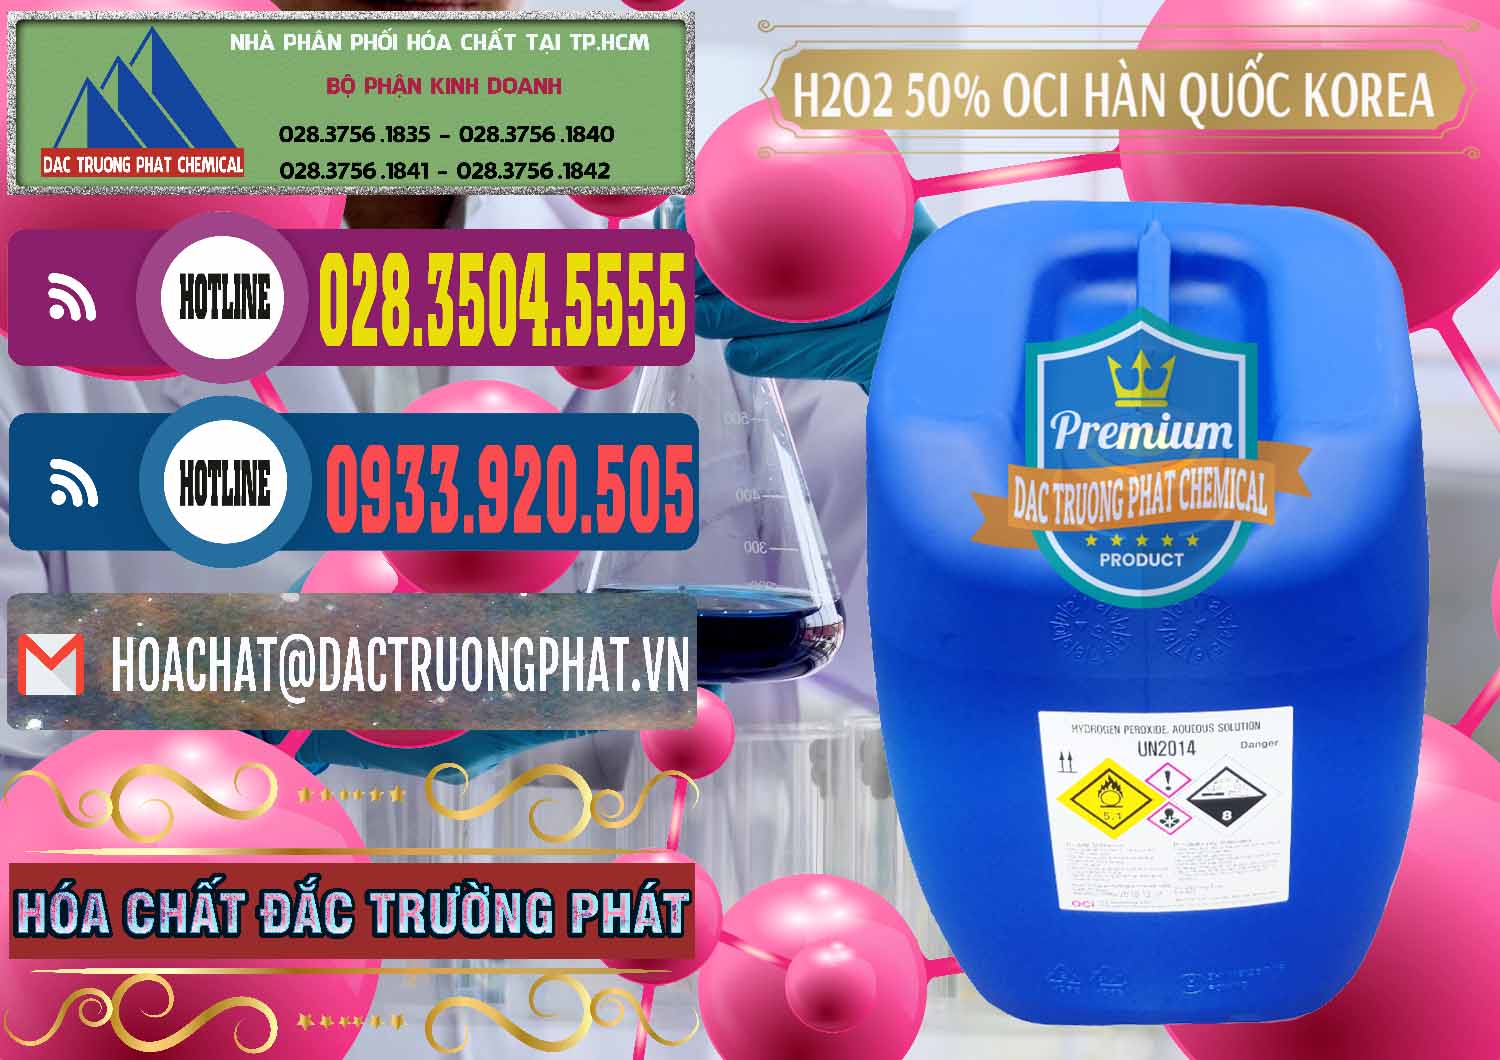 Đơn vị chuyên bán & phân phối H2O2 - Hydrogen Peroxide 50% OCI Hàn Quốc Korea - 0075 - Nơi phân phối _ kinh doanh hóa chất tại TP.HCM - muabanhoachat.com.vn